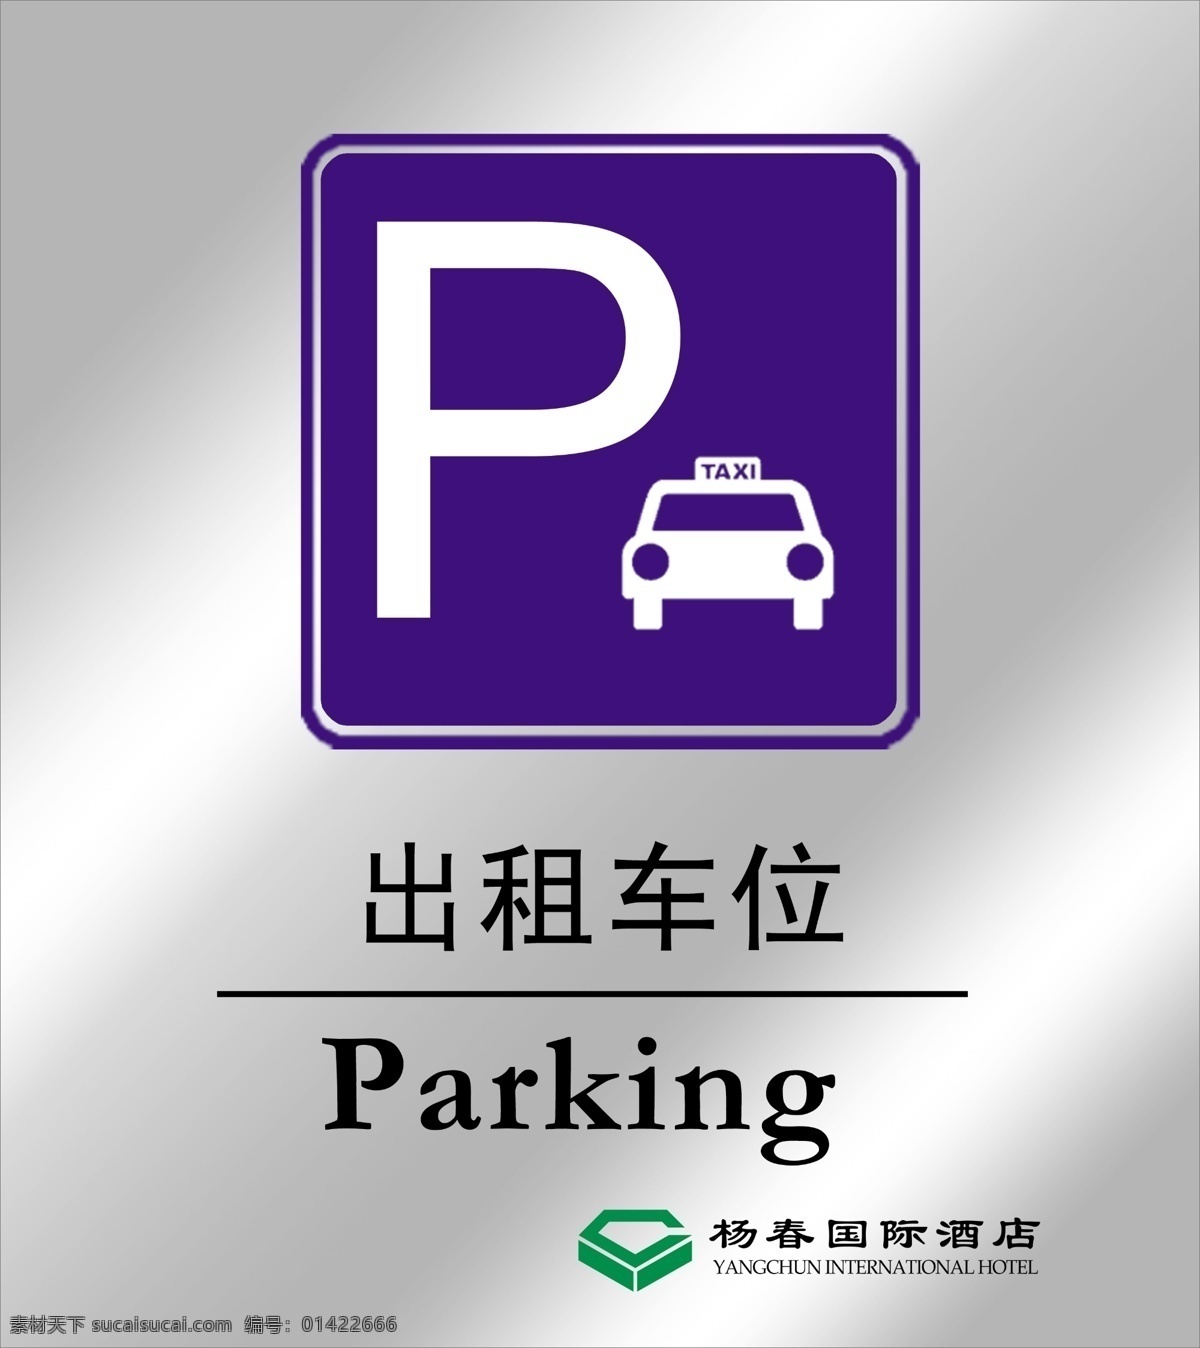 出租车 出租车停车位 停车位 parking 杨春国际酒店 不锈钢 设计图 分层 源文件